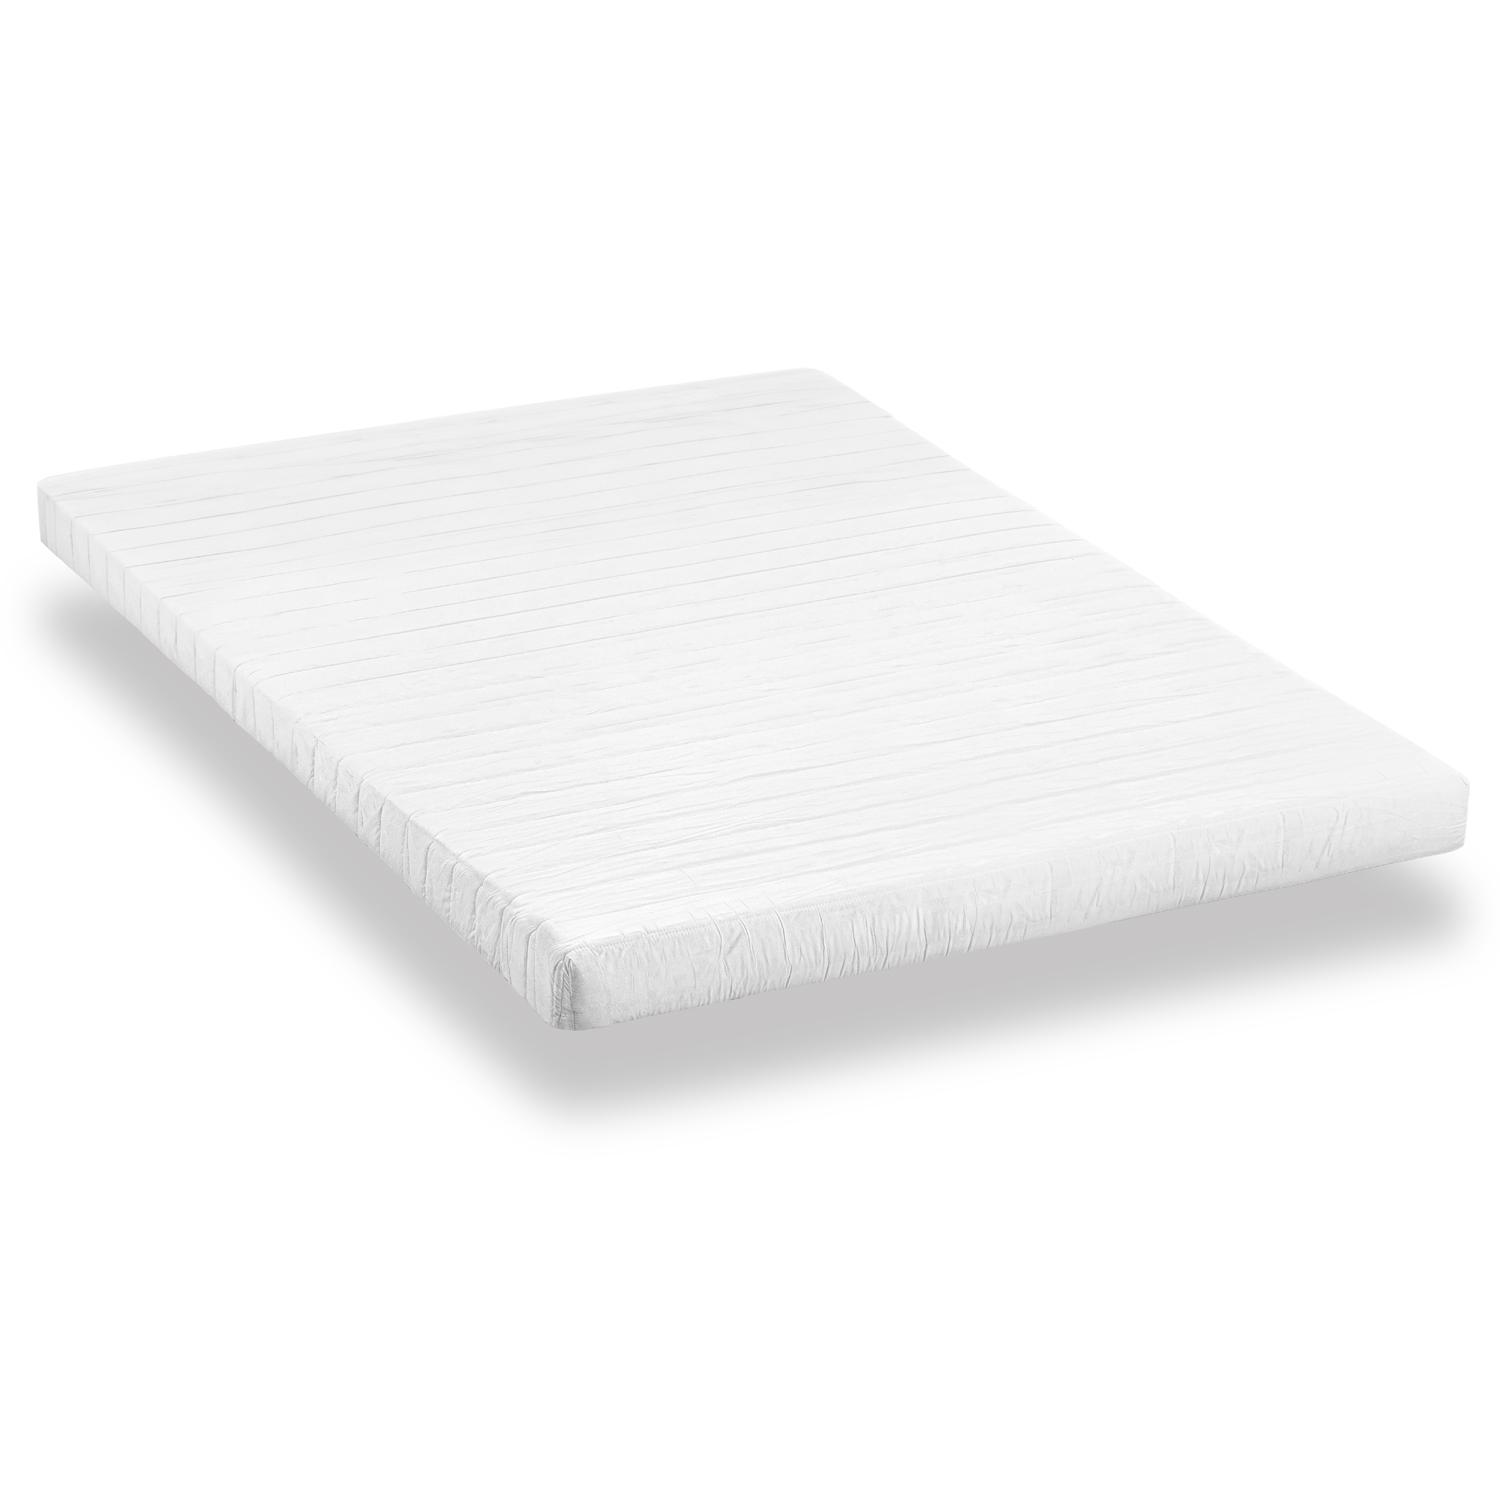 Comfort foam mattress K10 140 x 200 cm, height 10 cm, firmness level H3